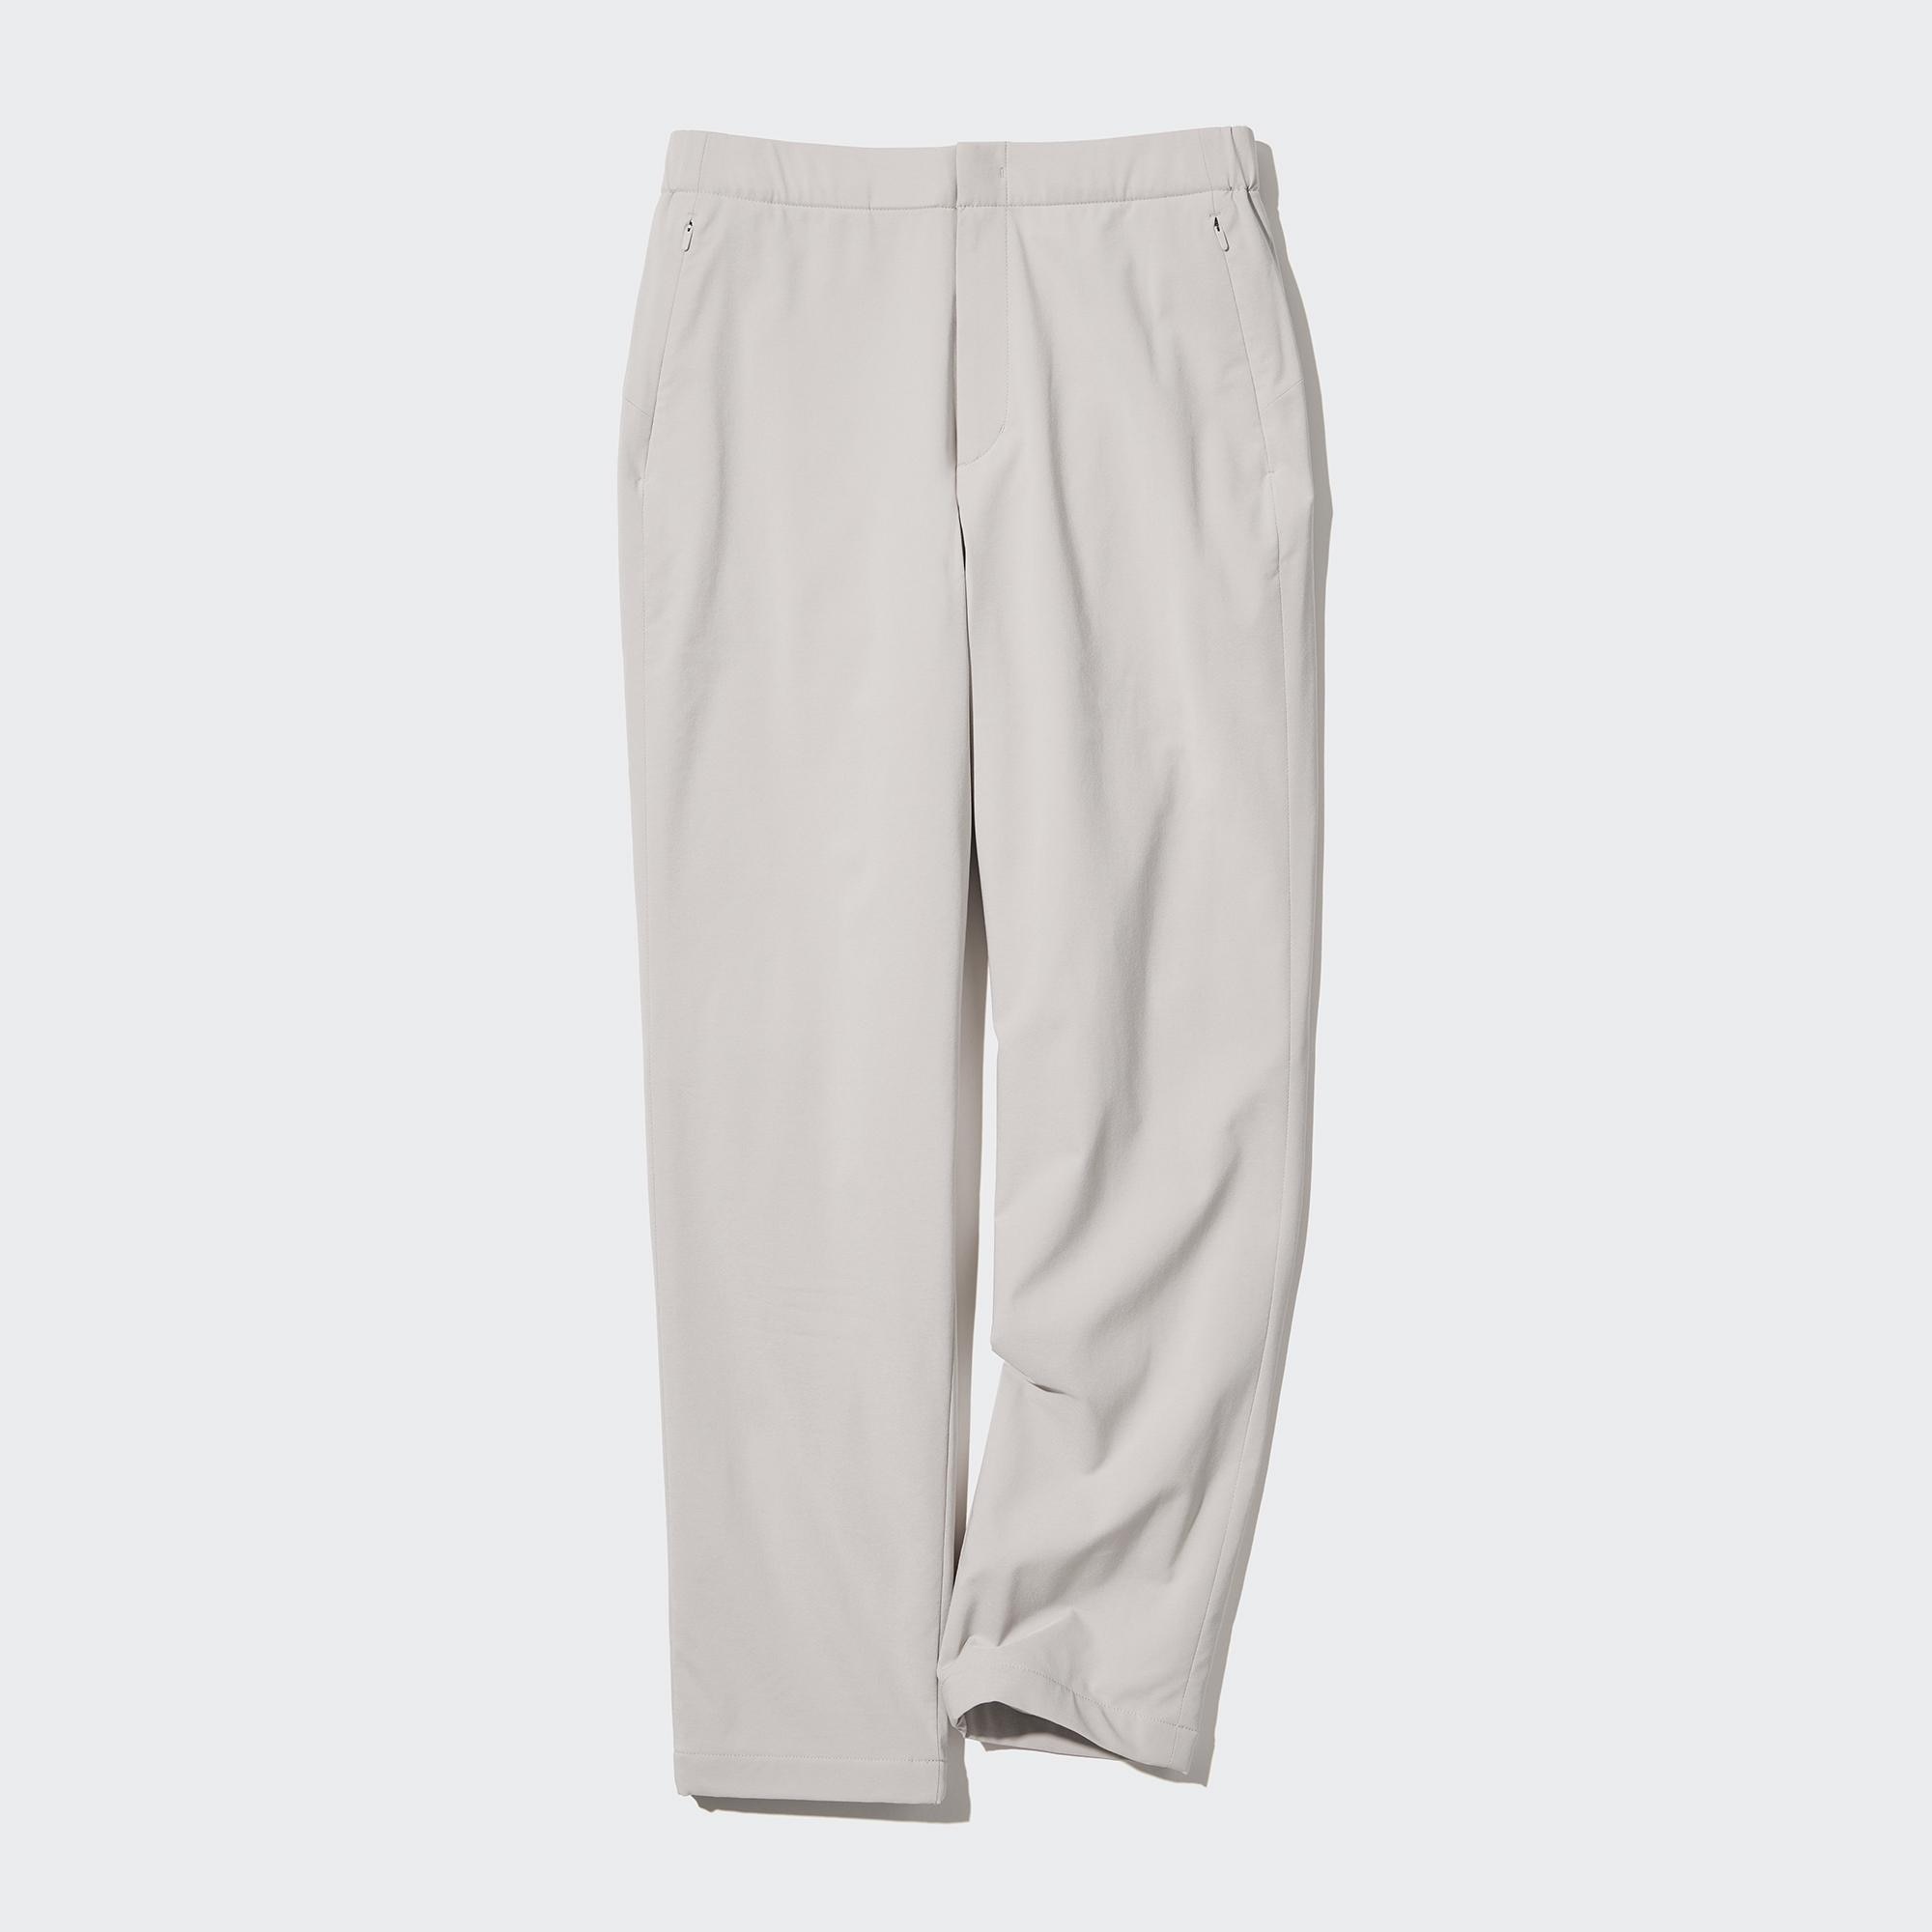 Uniqlo Ultra Stretch Trousers M fit M/L beige | eBay